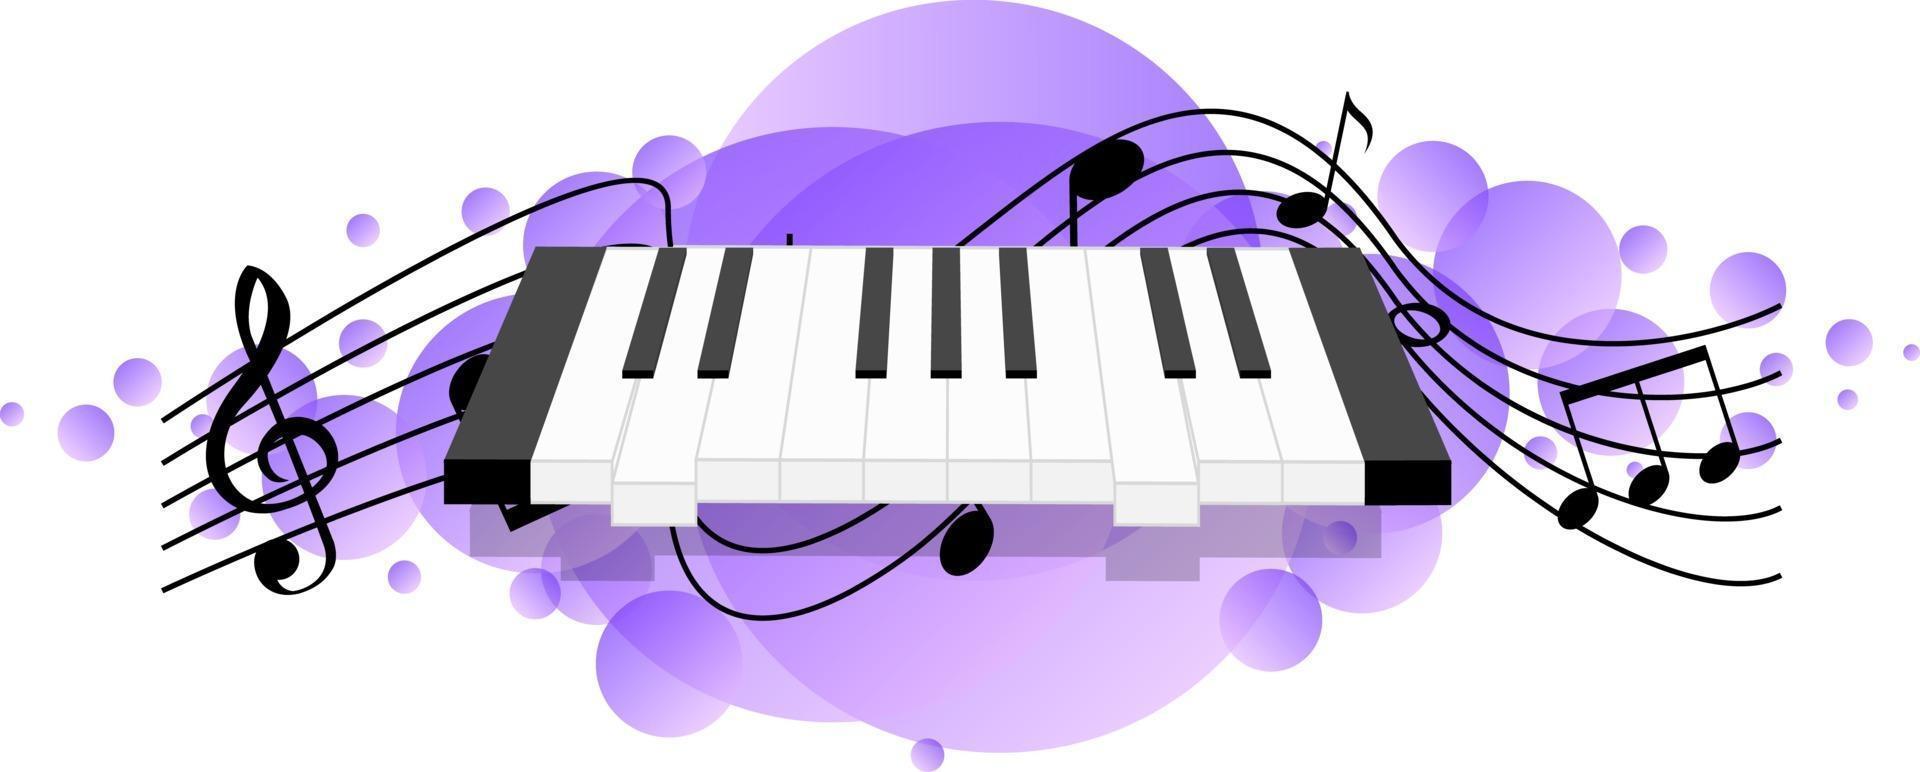 elektronische Tastatur oder elektronische Musikinstrumente Musiksymbole vektor